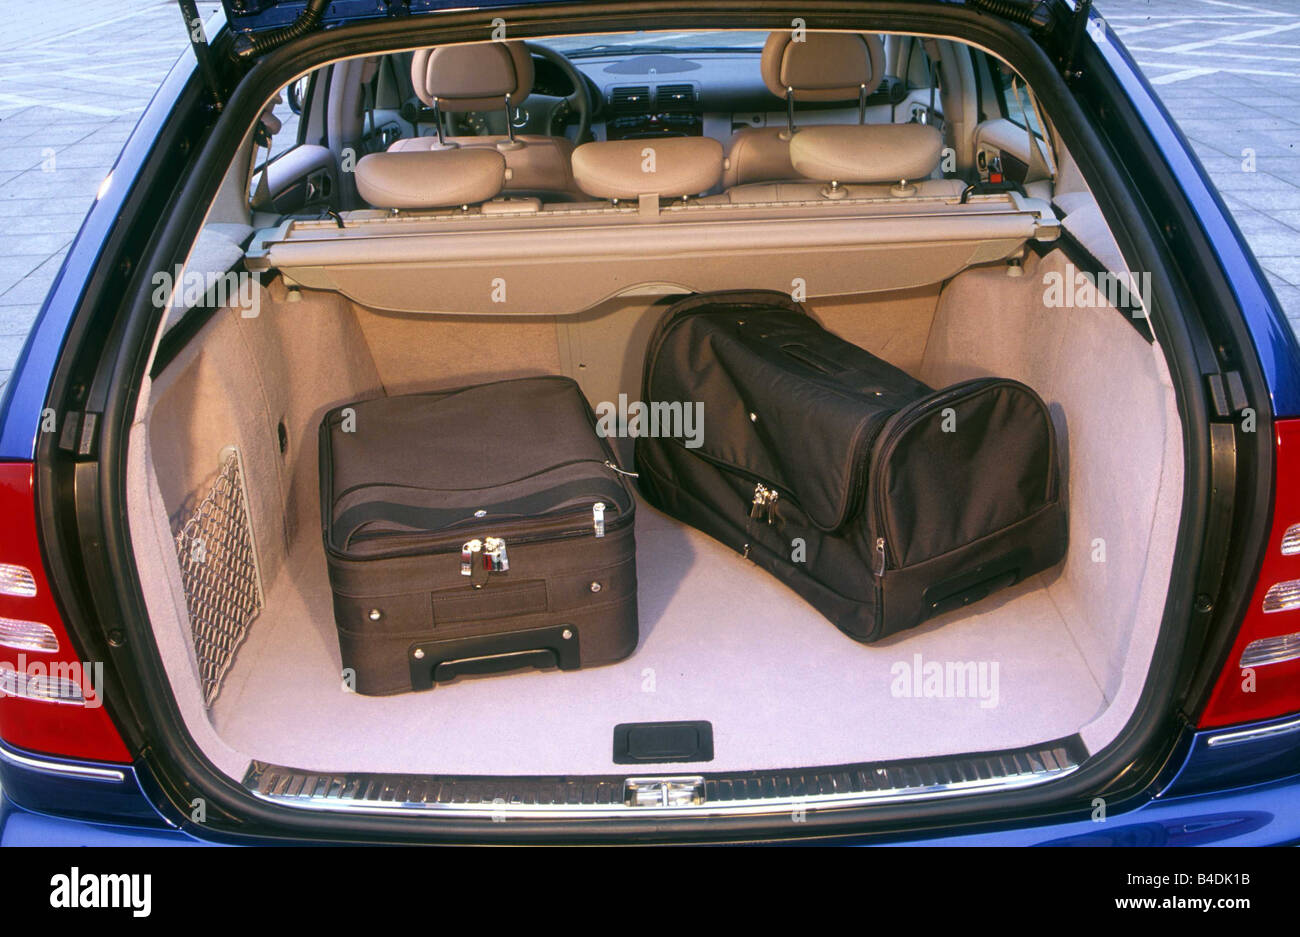 Voiture, Mercedes C 270 CDI berline, classe moyenne, bleu, l'année de modèle 2001, d'une vue dans le sabot, la technique/accessoire, accessoires Banque D'Images